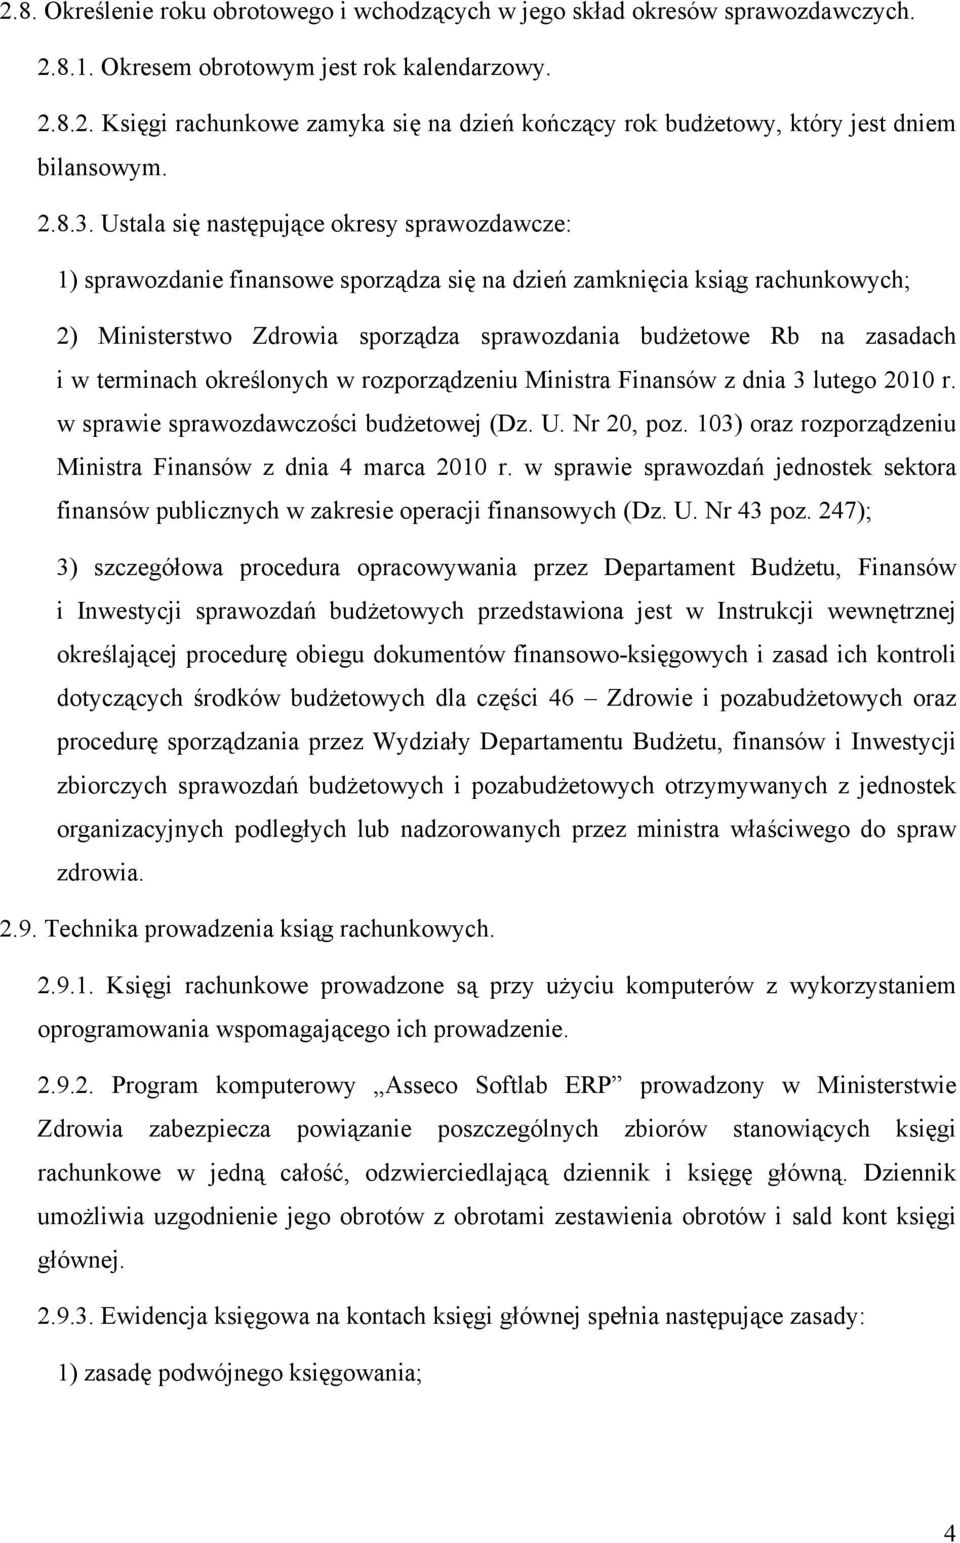 Ustala się następujące okresy sprawozdawcze: 1) sprawozdanie finansowe sporządza się na dzień zamknięcia ksiąg rachunkowych; 2) Ministerstwo Zdrowia sporządza sprawozdania budżetowe Rb na zasadach i